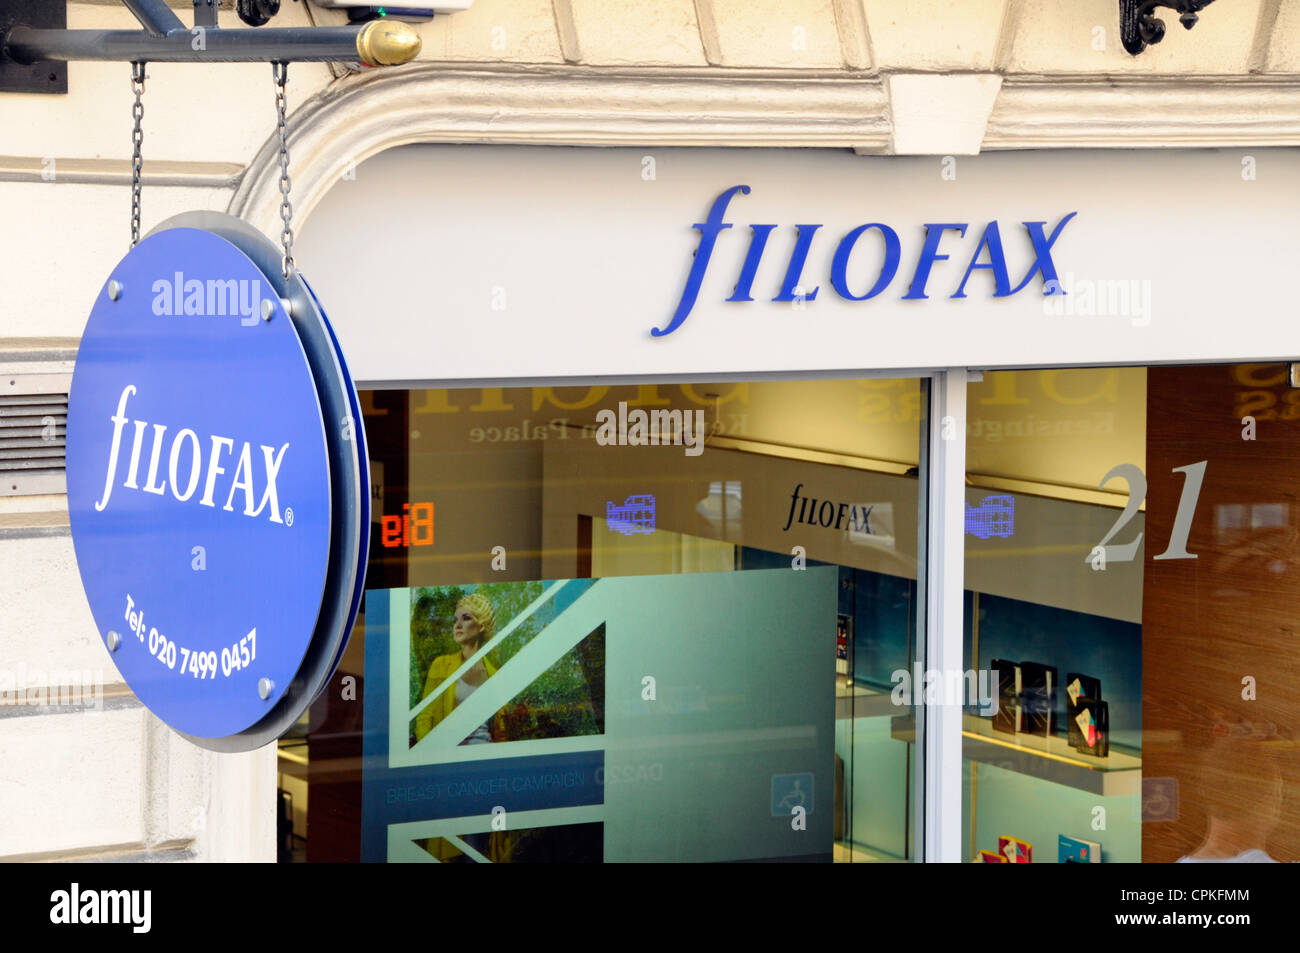 Au-dessus de signes et de vue en boutique officielle Filofax dans West End Mayfair Londres Angleterre Royaume-uni Banque D'Images